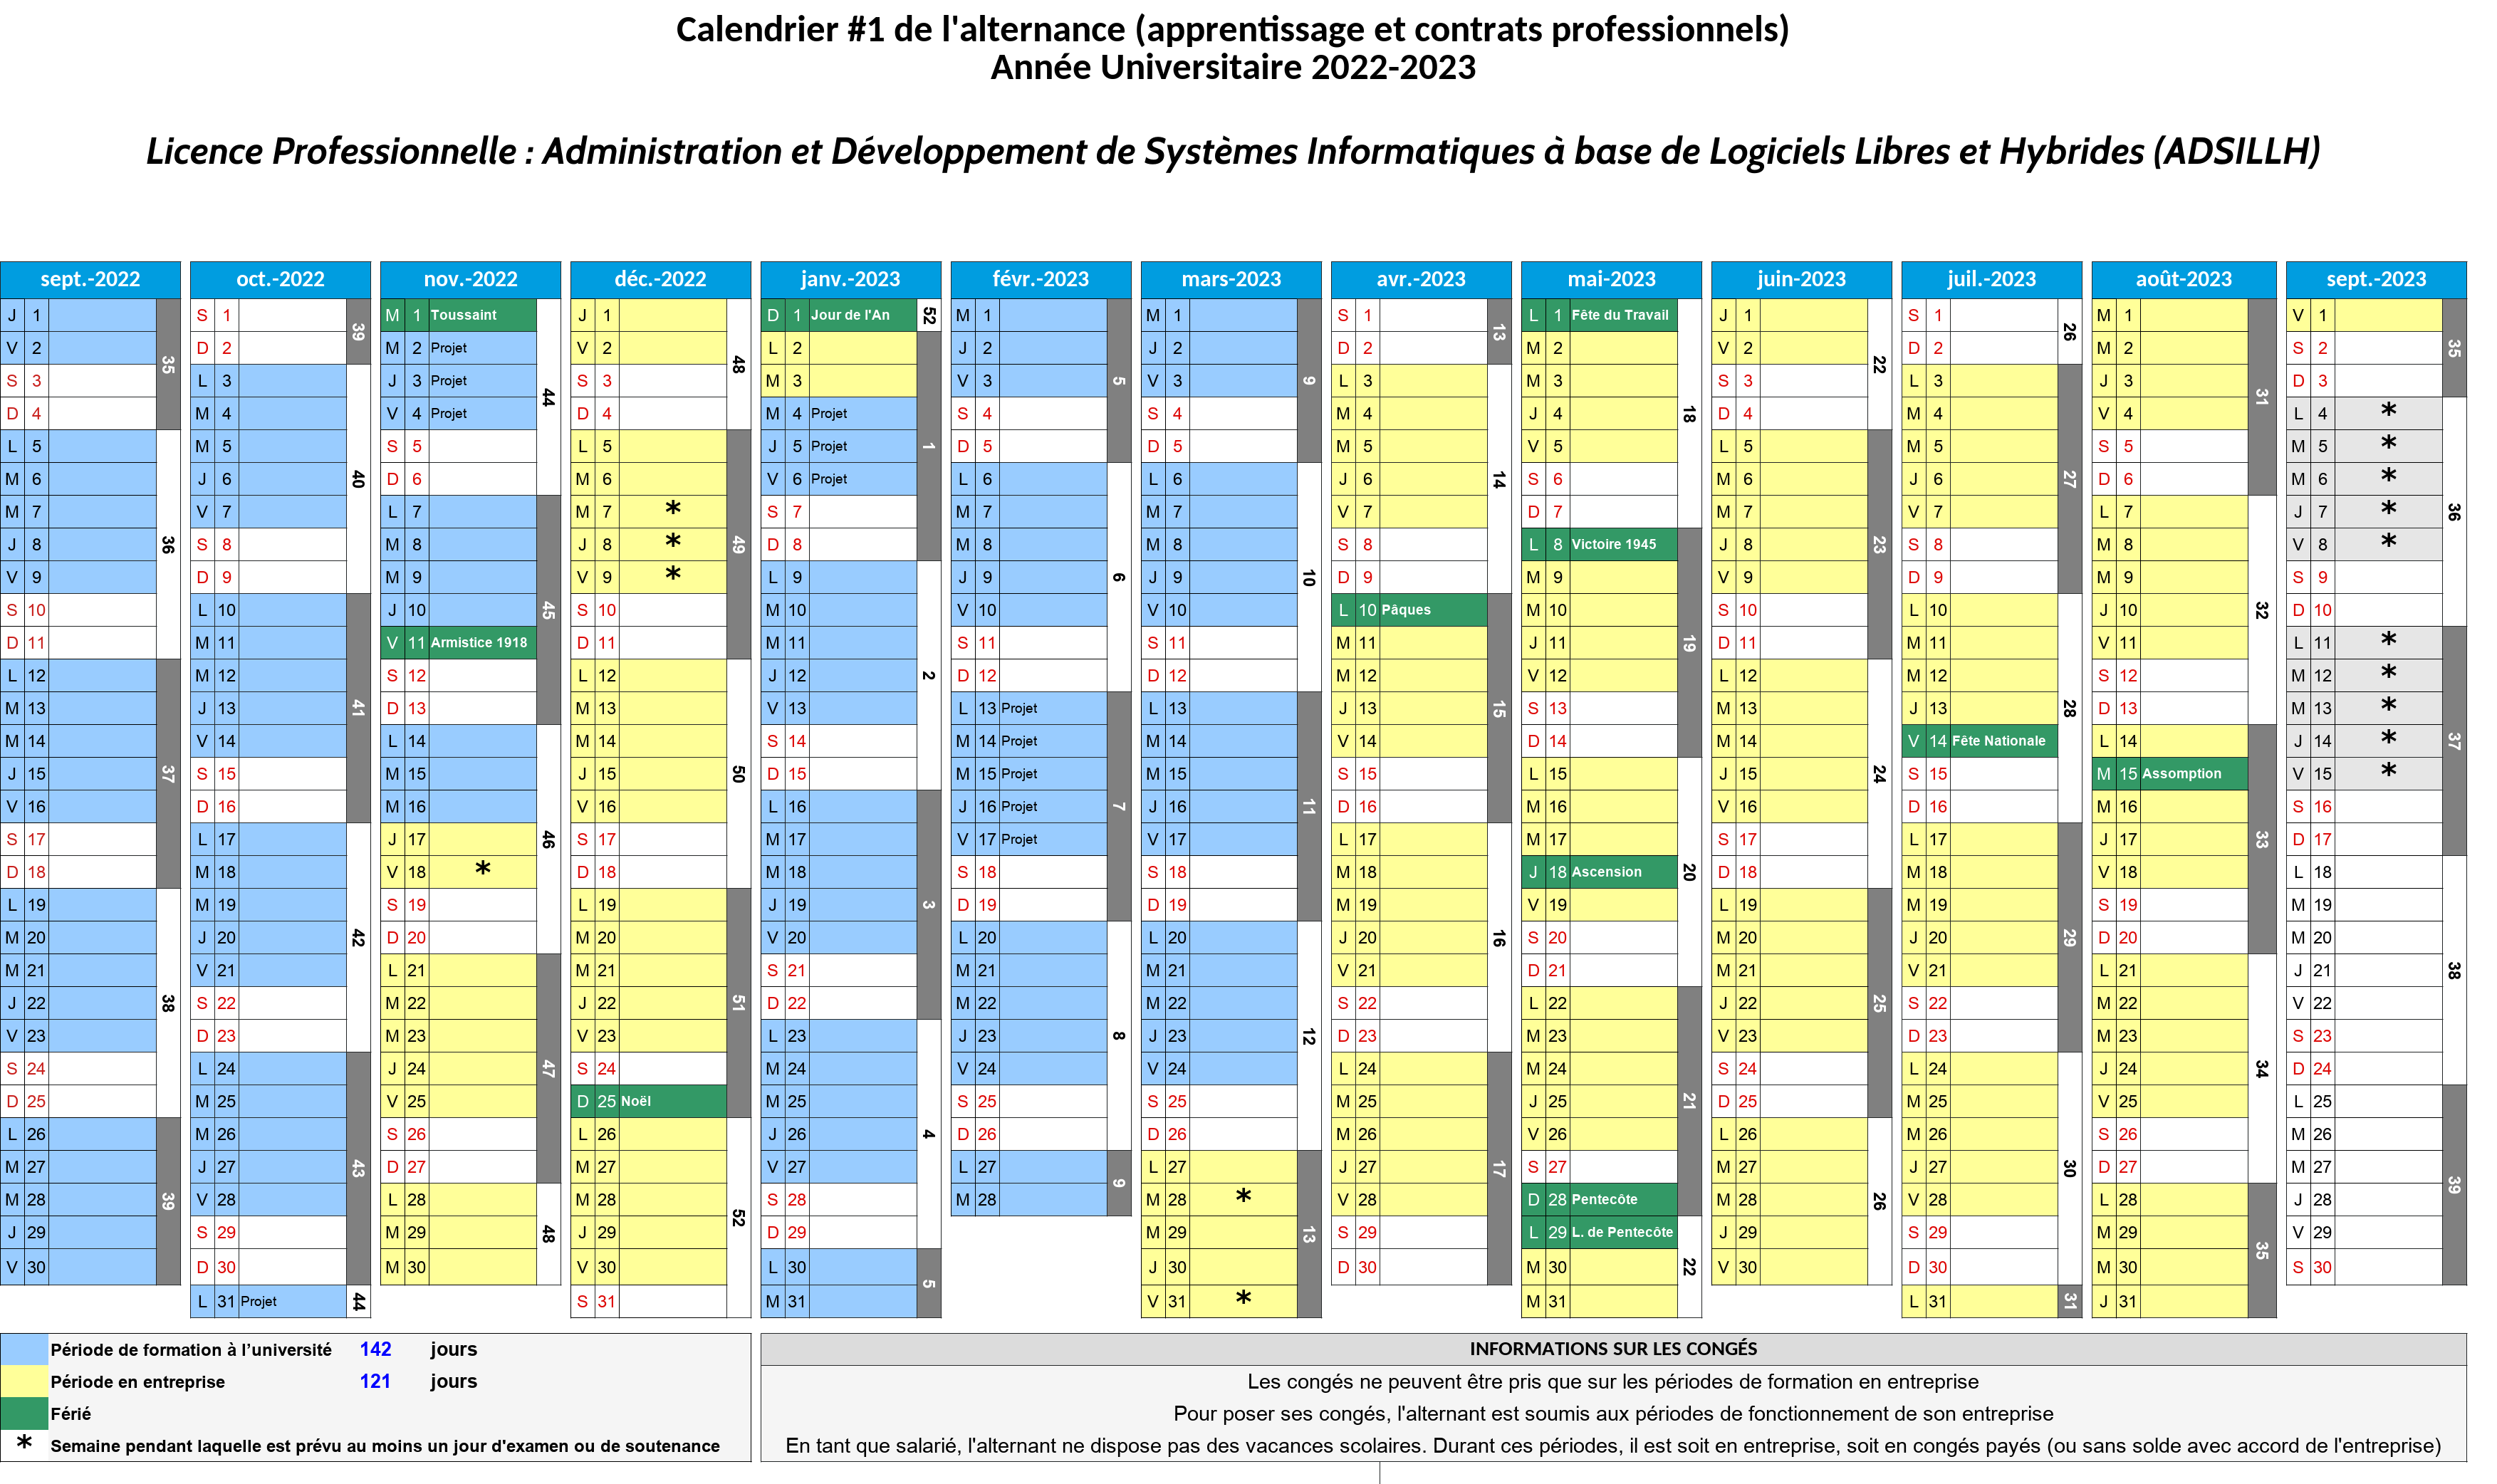 Calendrier prévisionnel (2022-2023) [alternance 1]